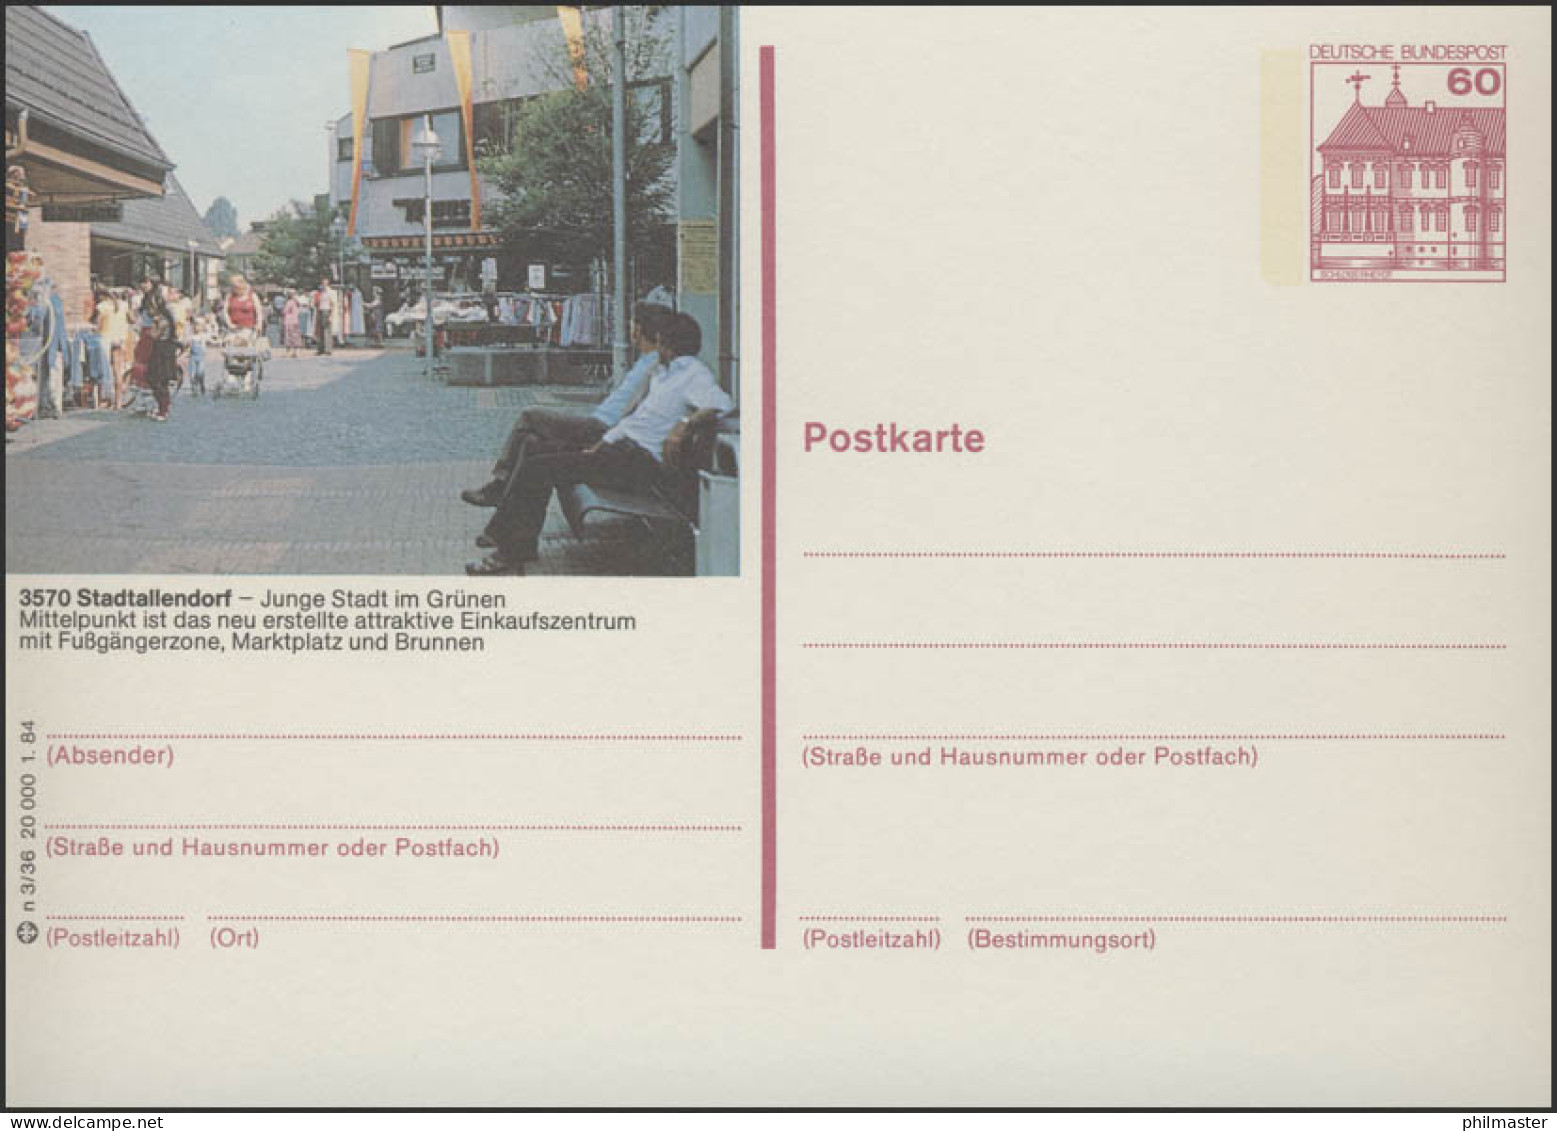 P138-n3/036 3570 Stadtallendorf - Fußgängerzone ** - Illustrated Postcards - Mint